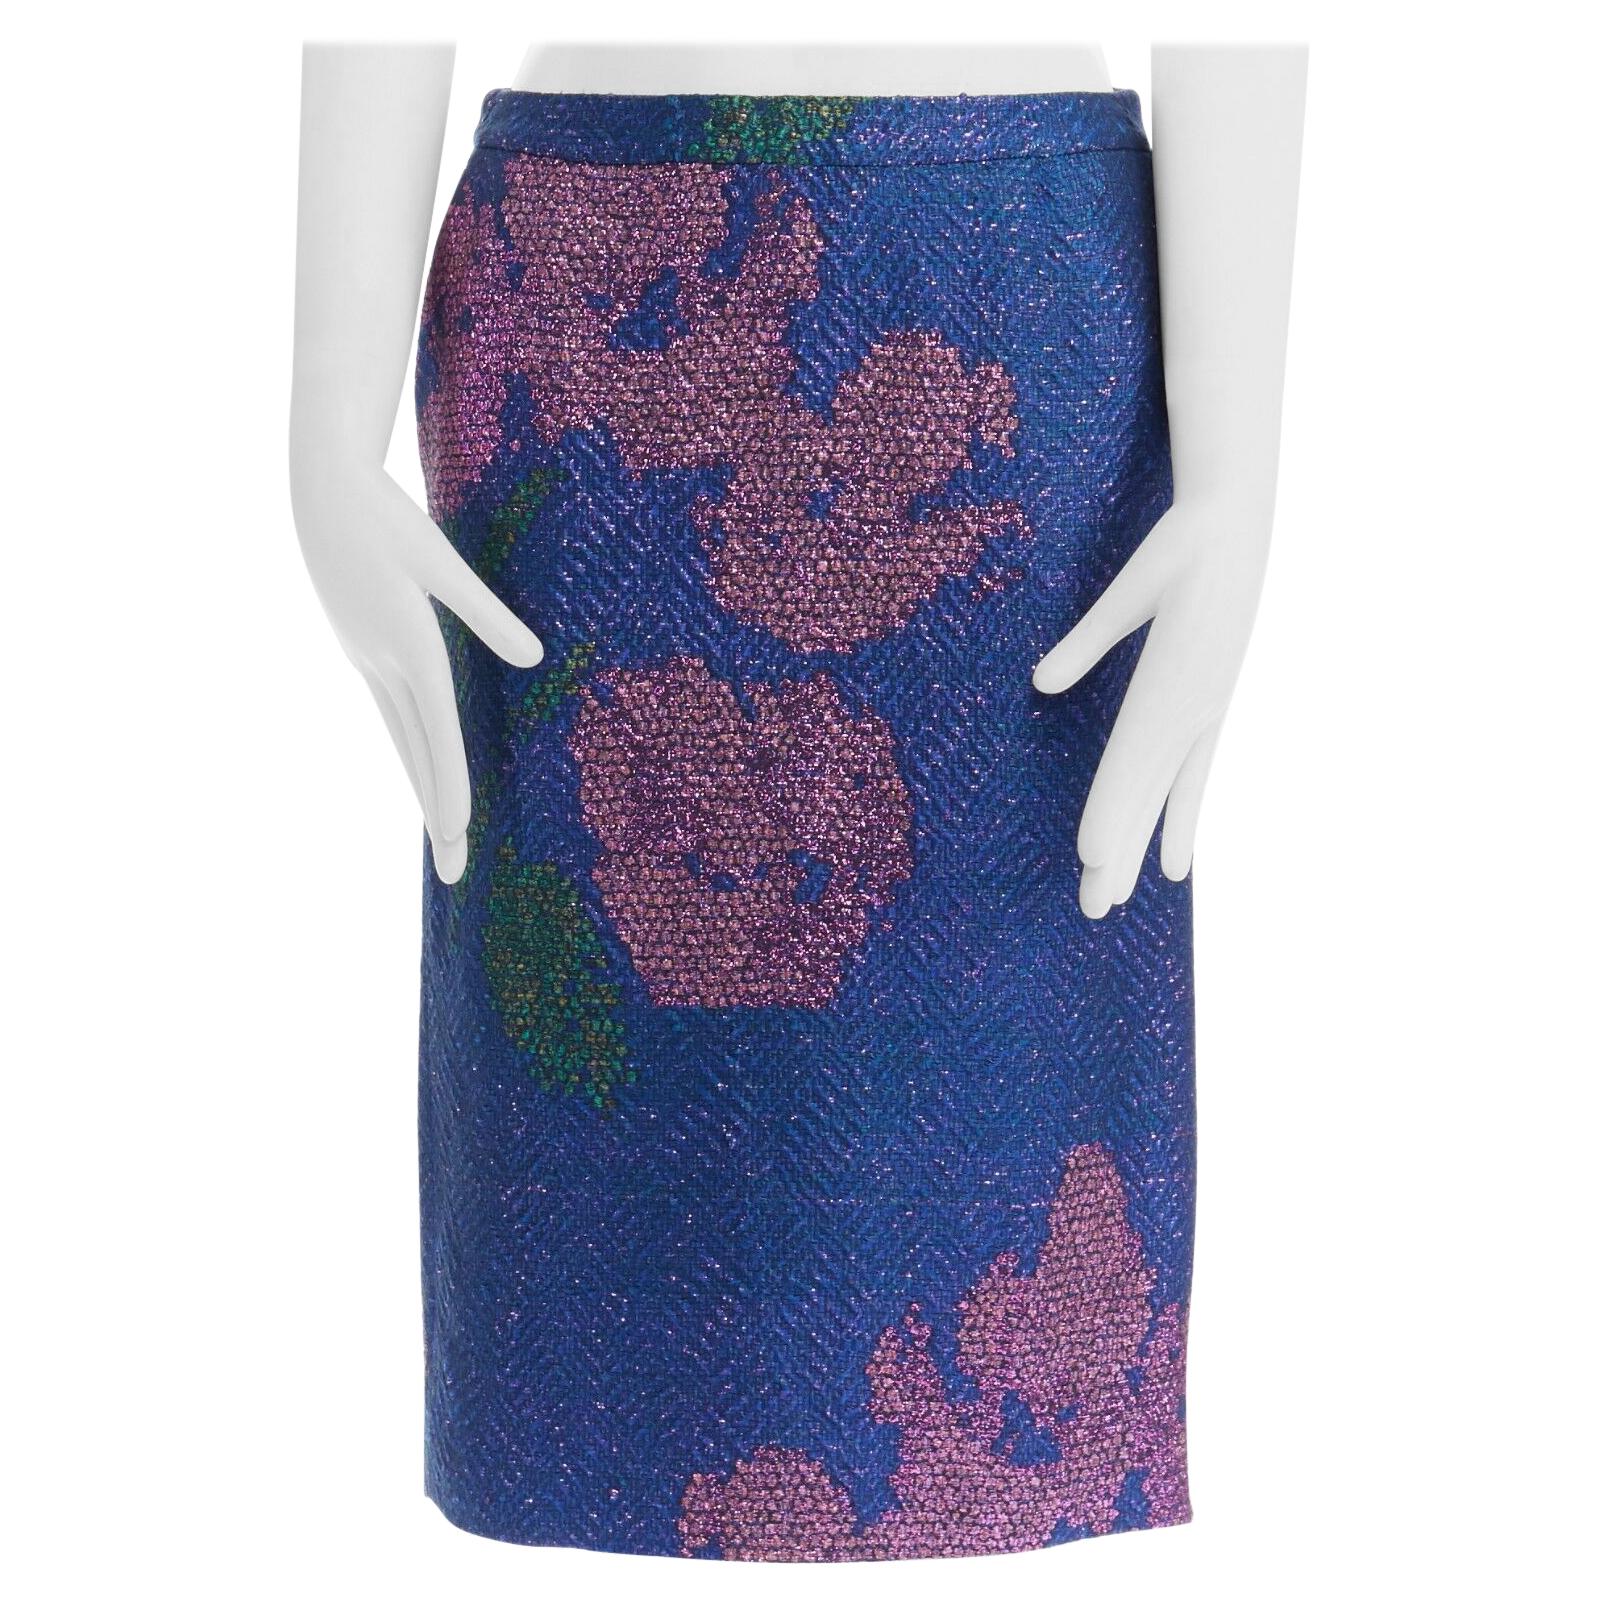 new DRIES VAN NOTEN SS15 metallic blue pink floral chevron pencil skirt FR36 28"